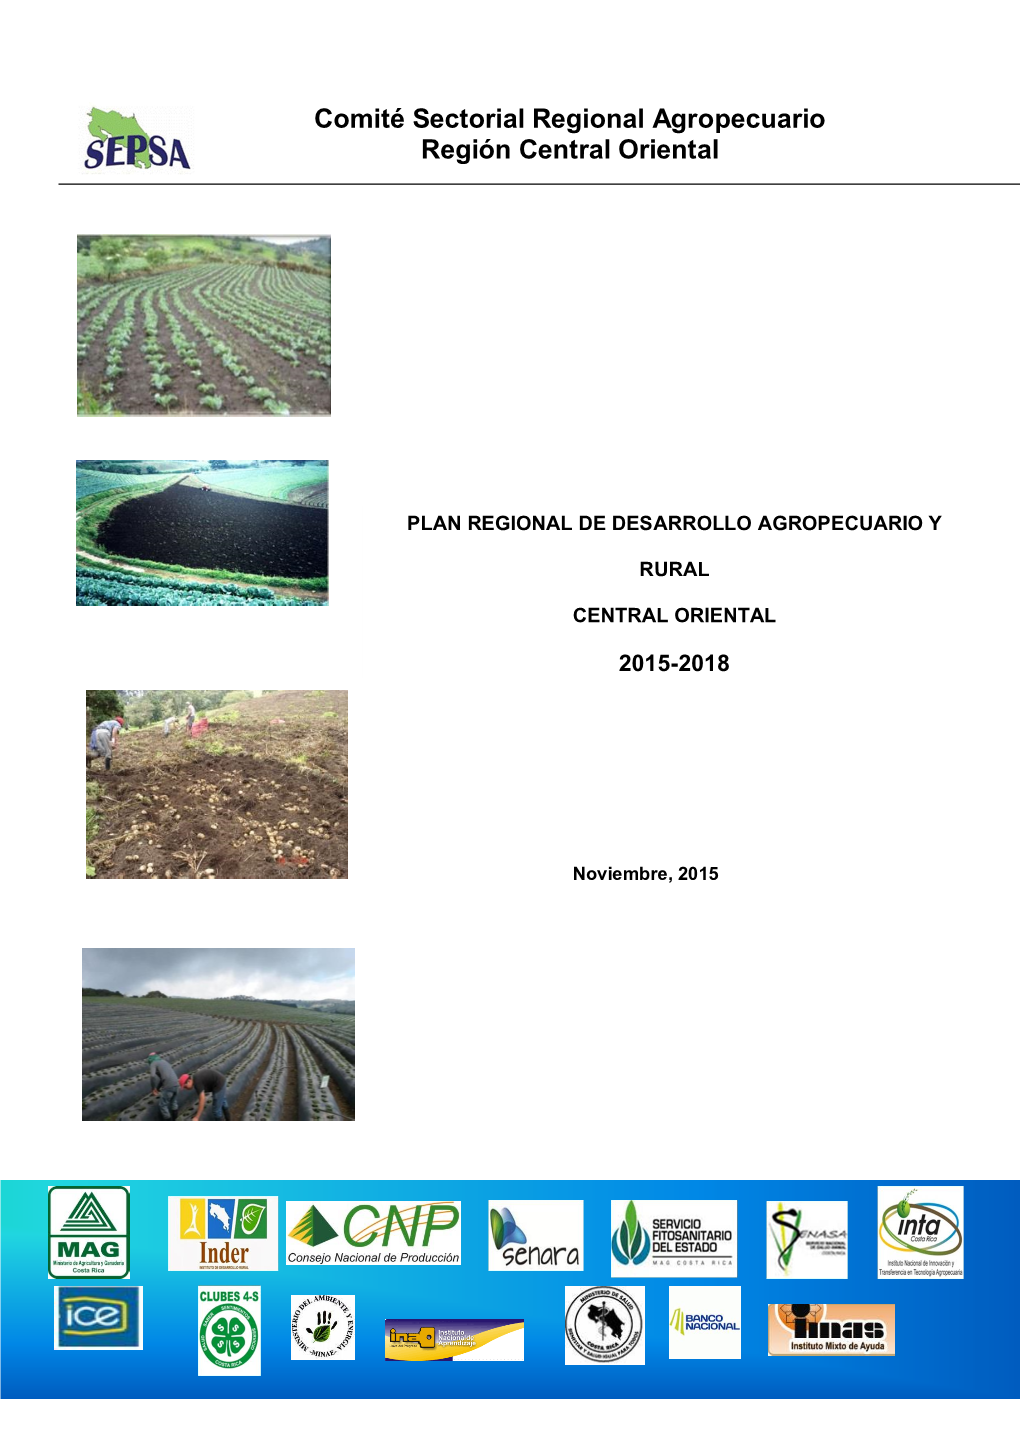 Comité Sectorial Regional Agropecuario Región Central Oriental